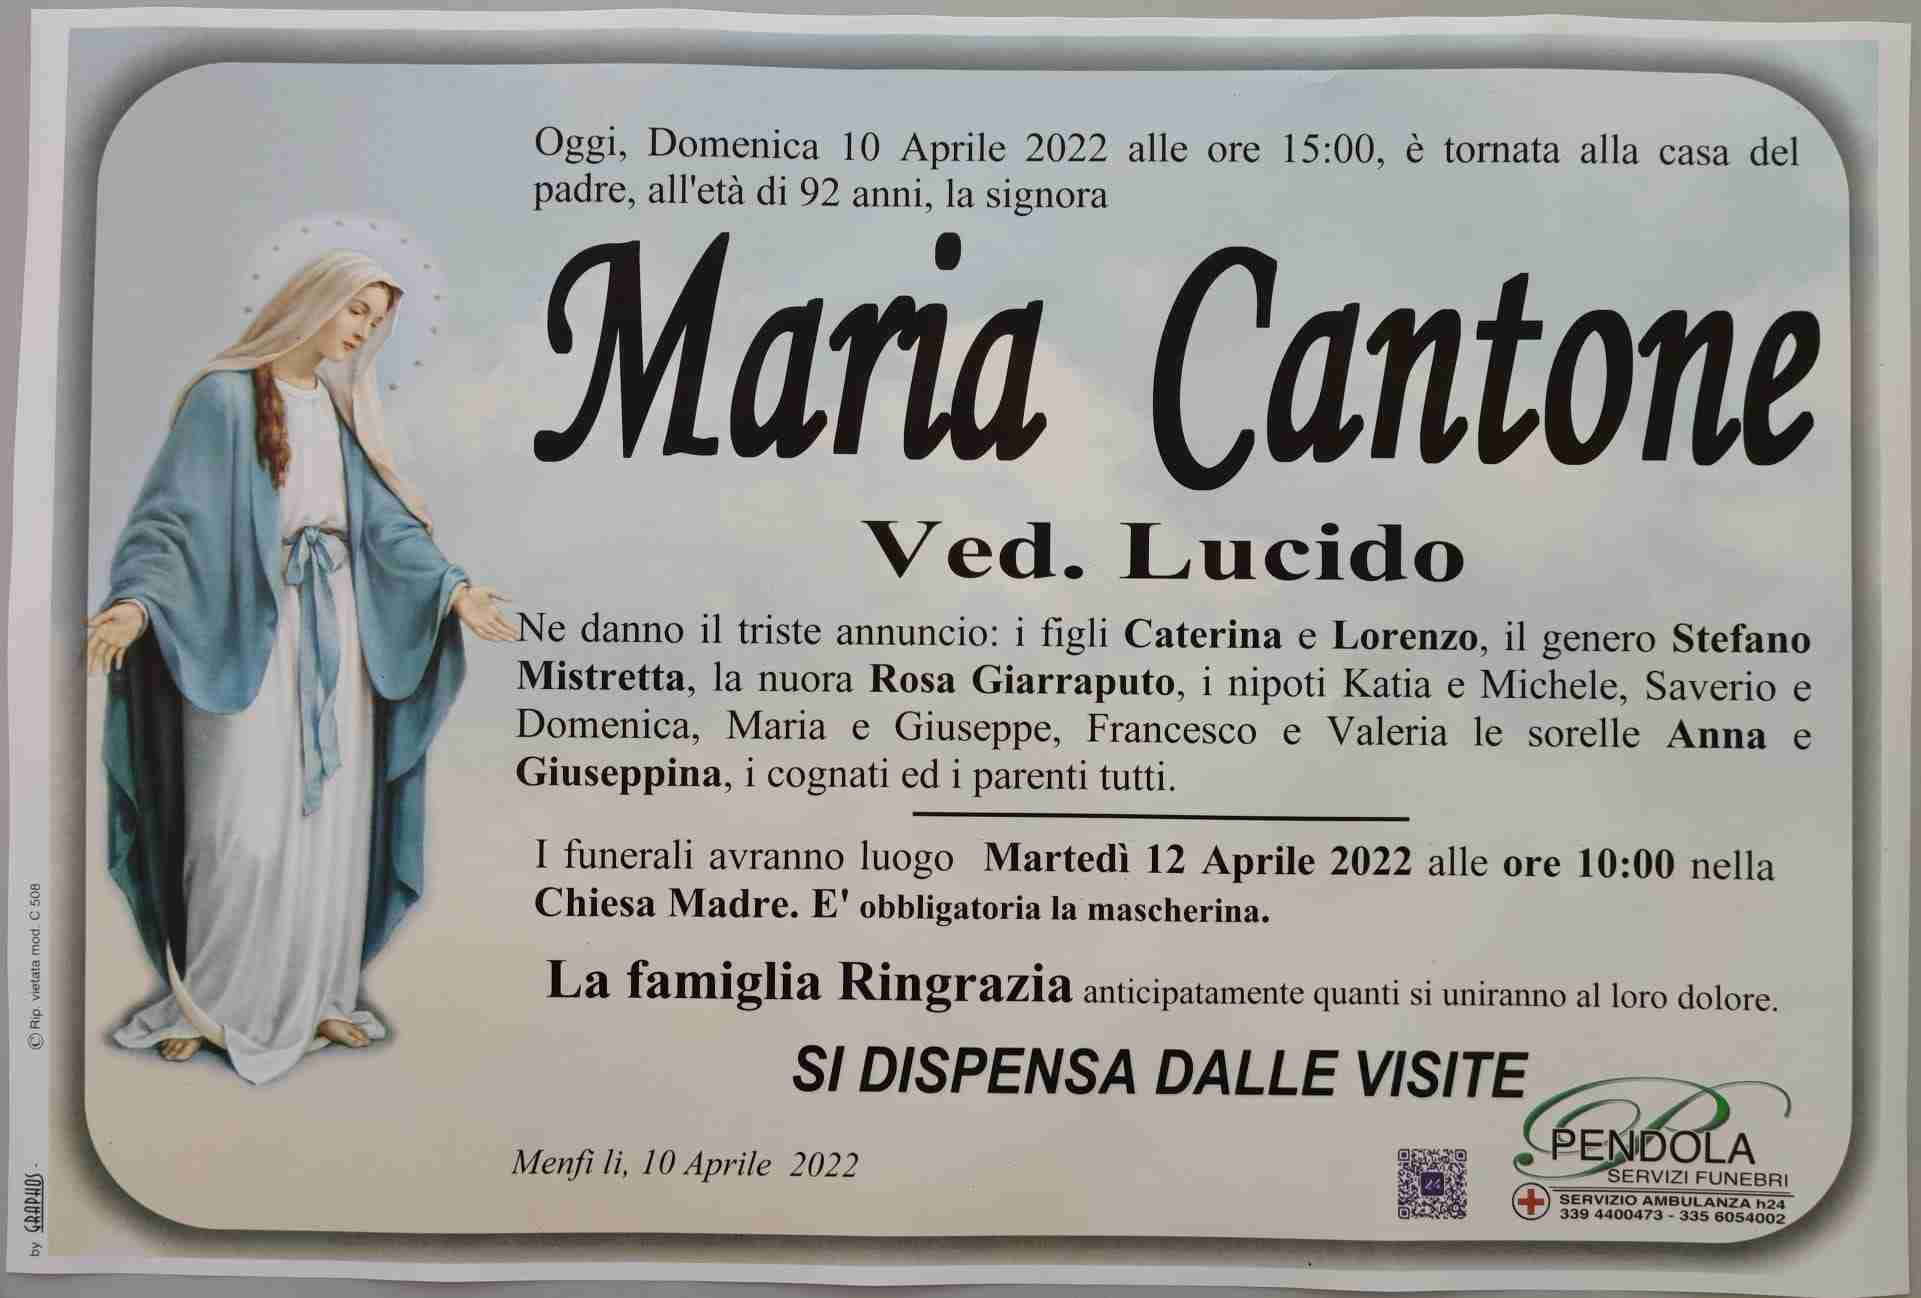 Maria Cantone